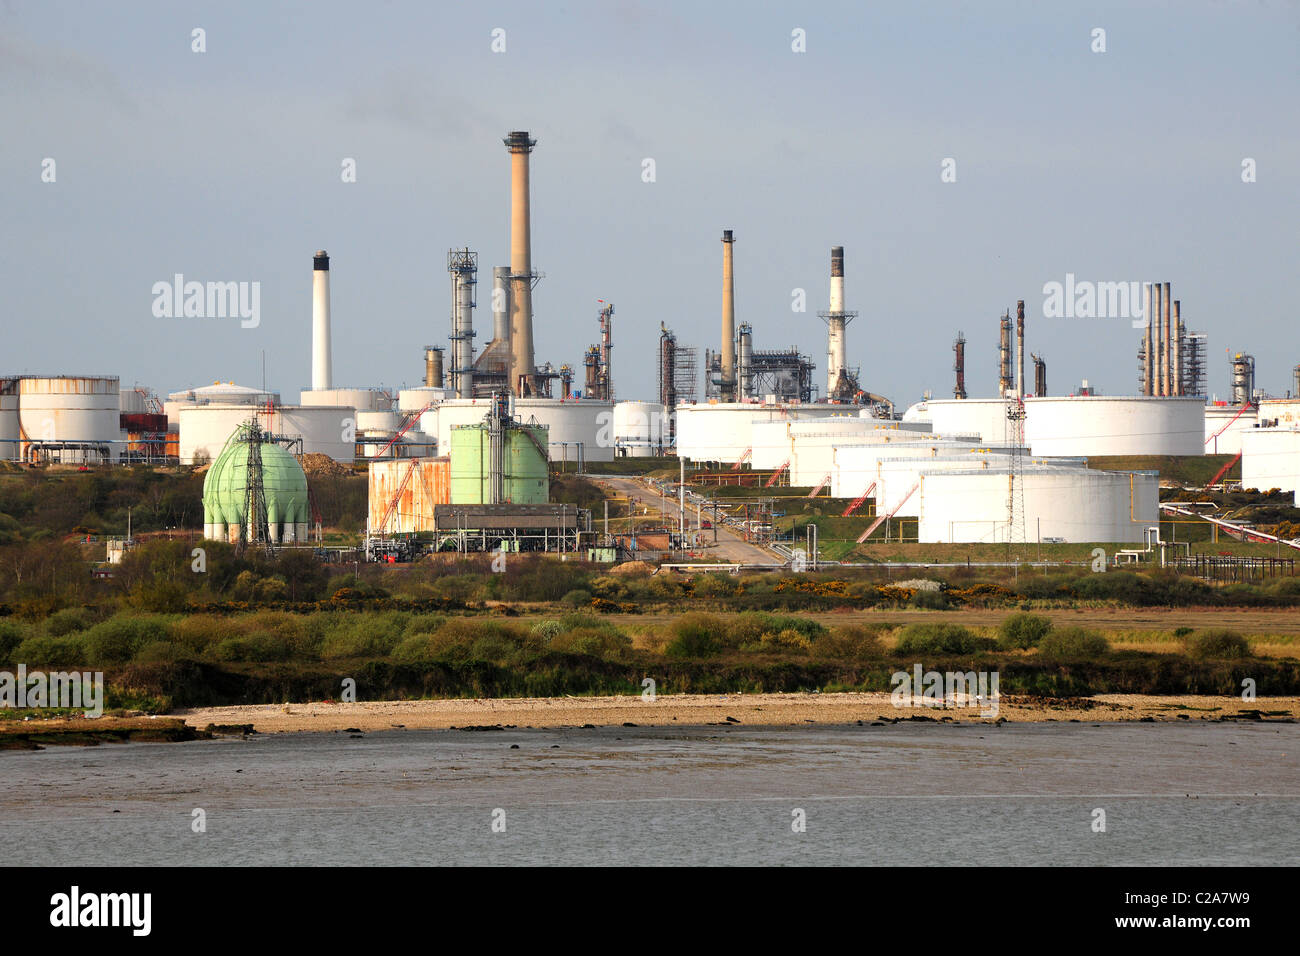 Une raffinerie de pétrole avec cheminées et de grandes cuves de stockage. Banque D'Images